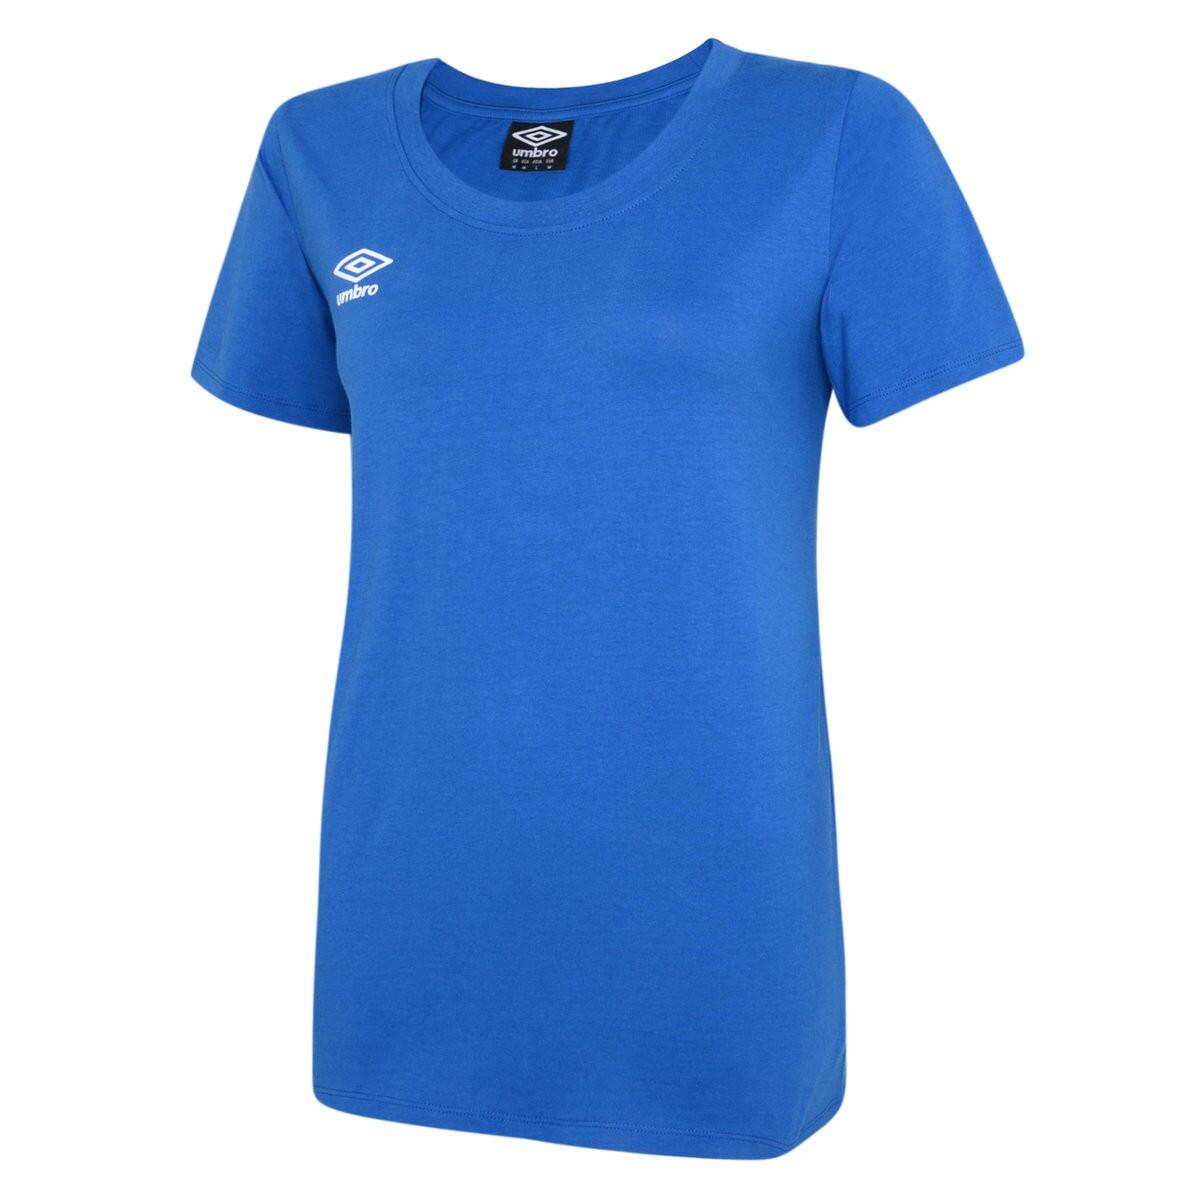 Womens/Ladies Club Leisure TShirt (Royal Blue/White) 1/3